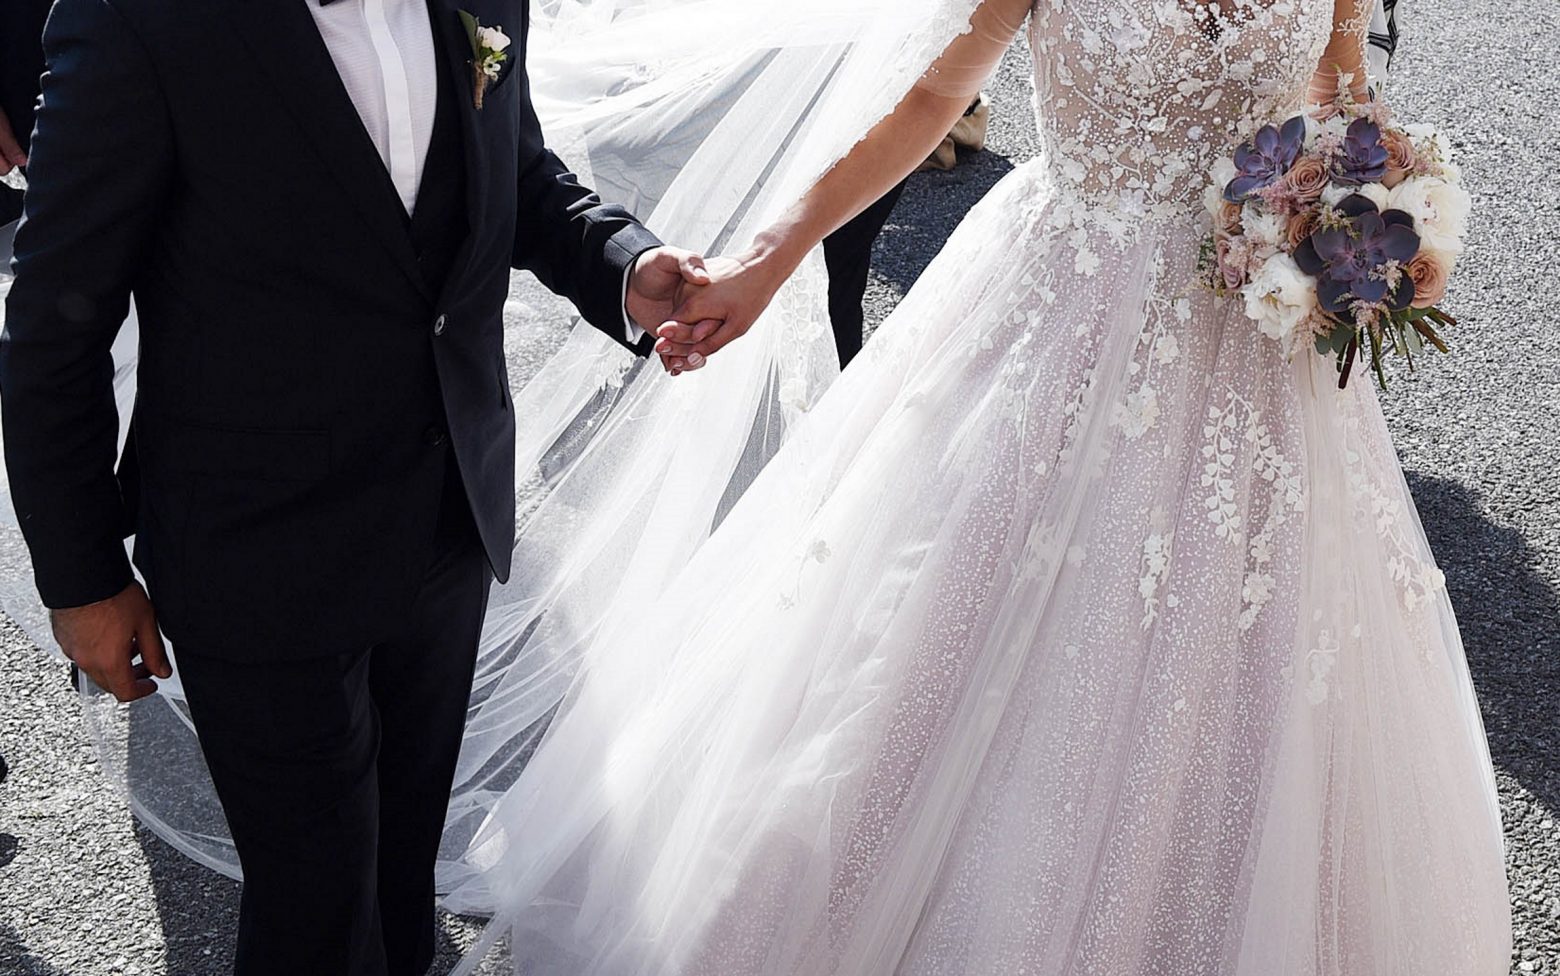 Κρήτη - 25 ανεμβολίαστοι πήγαν σε γαμήλιο γλέντι με ένα πιστοποιητικό - Τους «έπιασε» ο γαμπρός